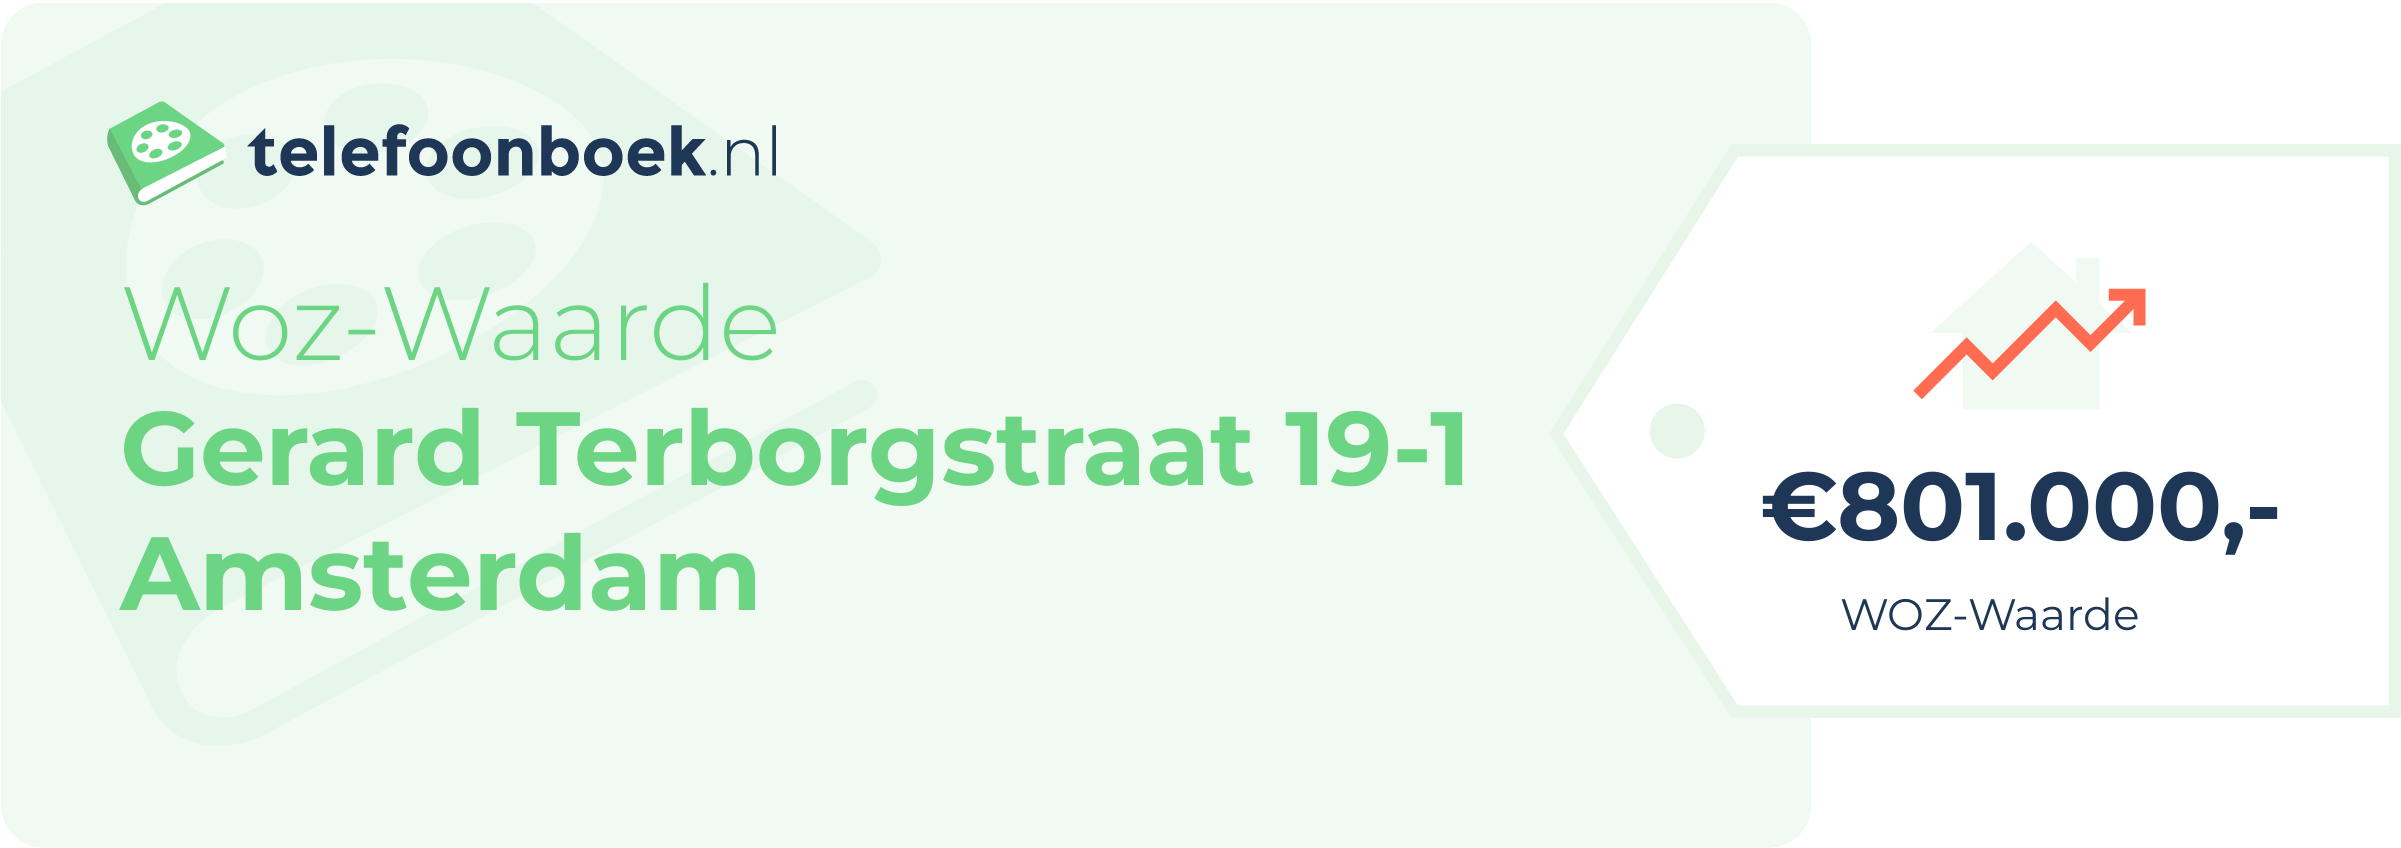 WOZ-waarde Gerard Terborgstraat 19-1 Amsterdam